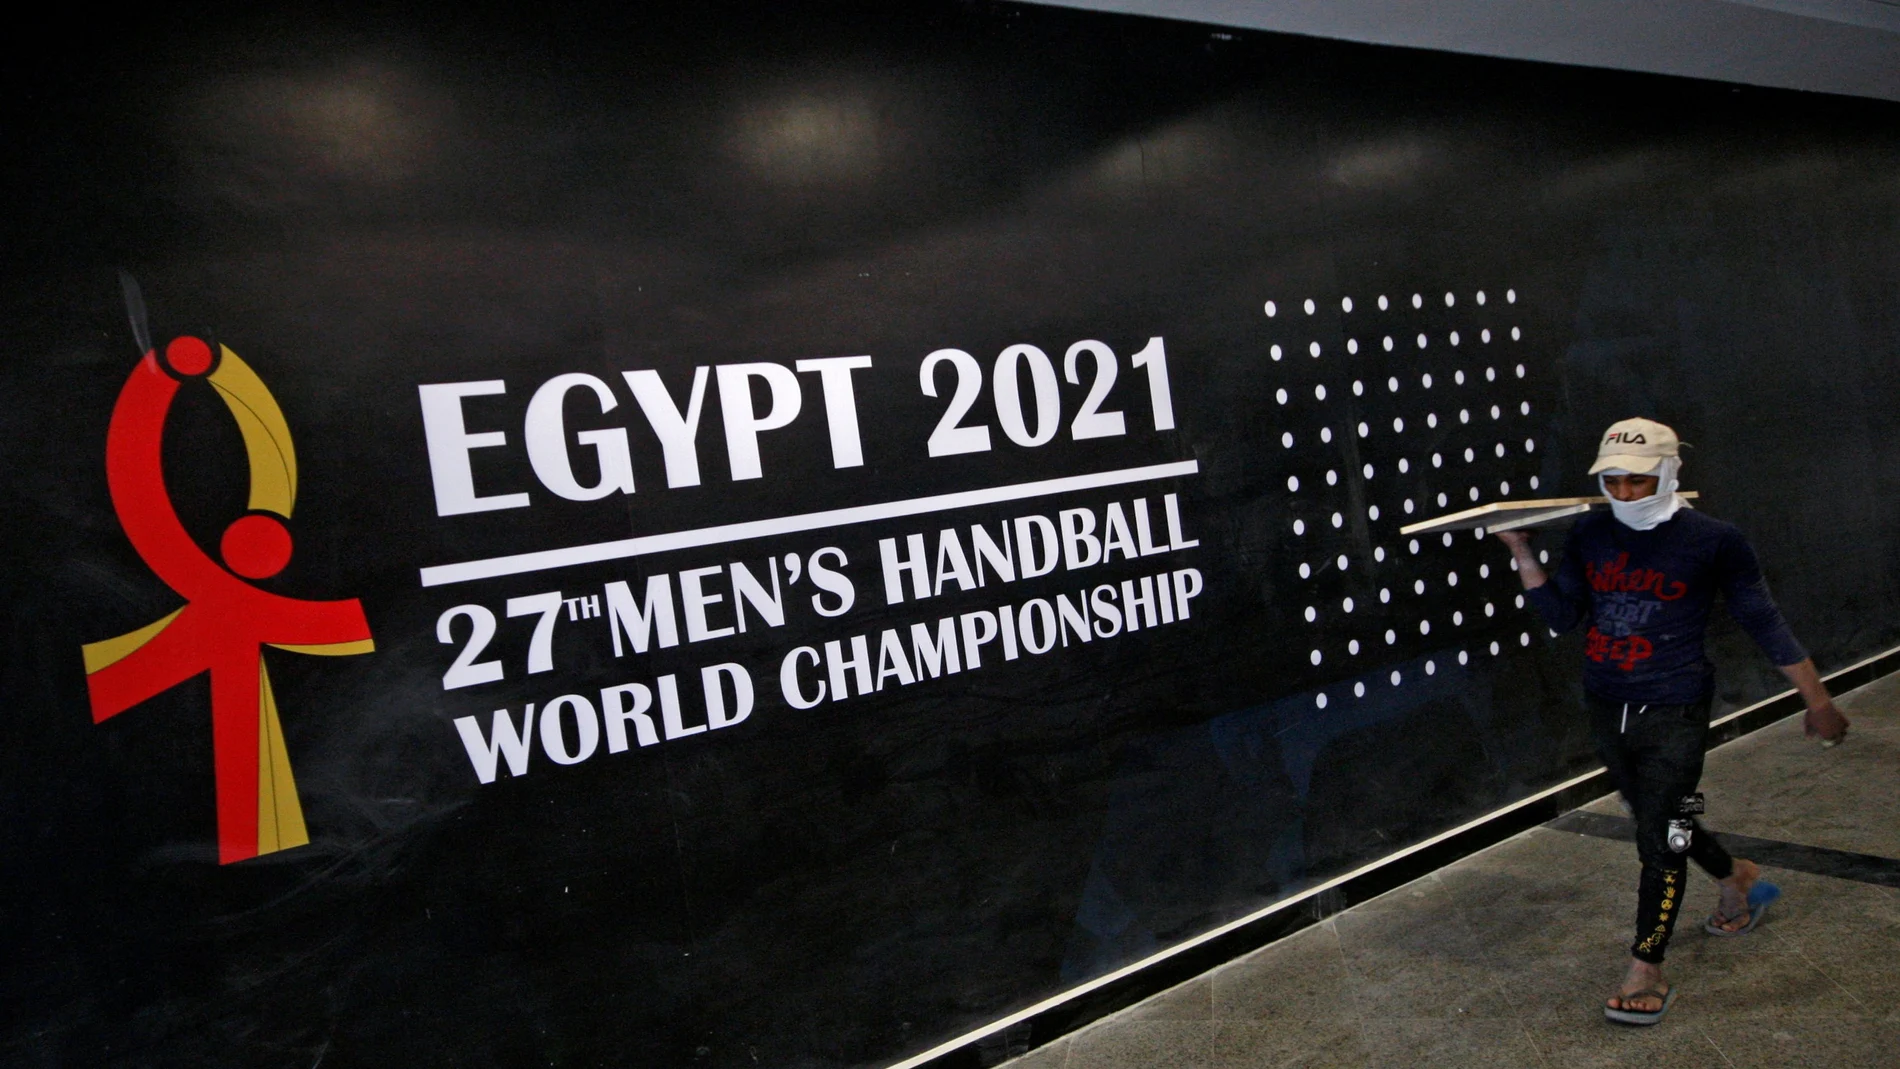 El Mundial de Balonmano de Egipto comienza hoy y dura hasta el 31 de agosto